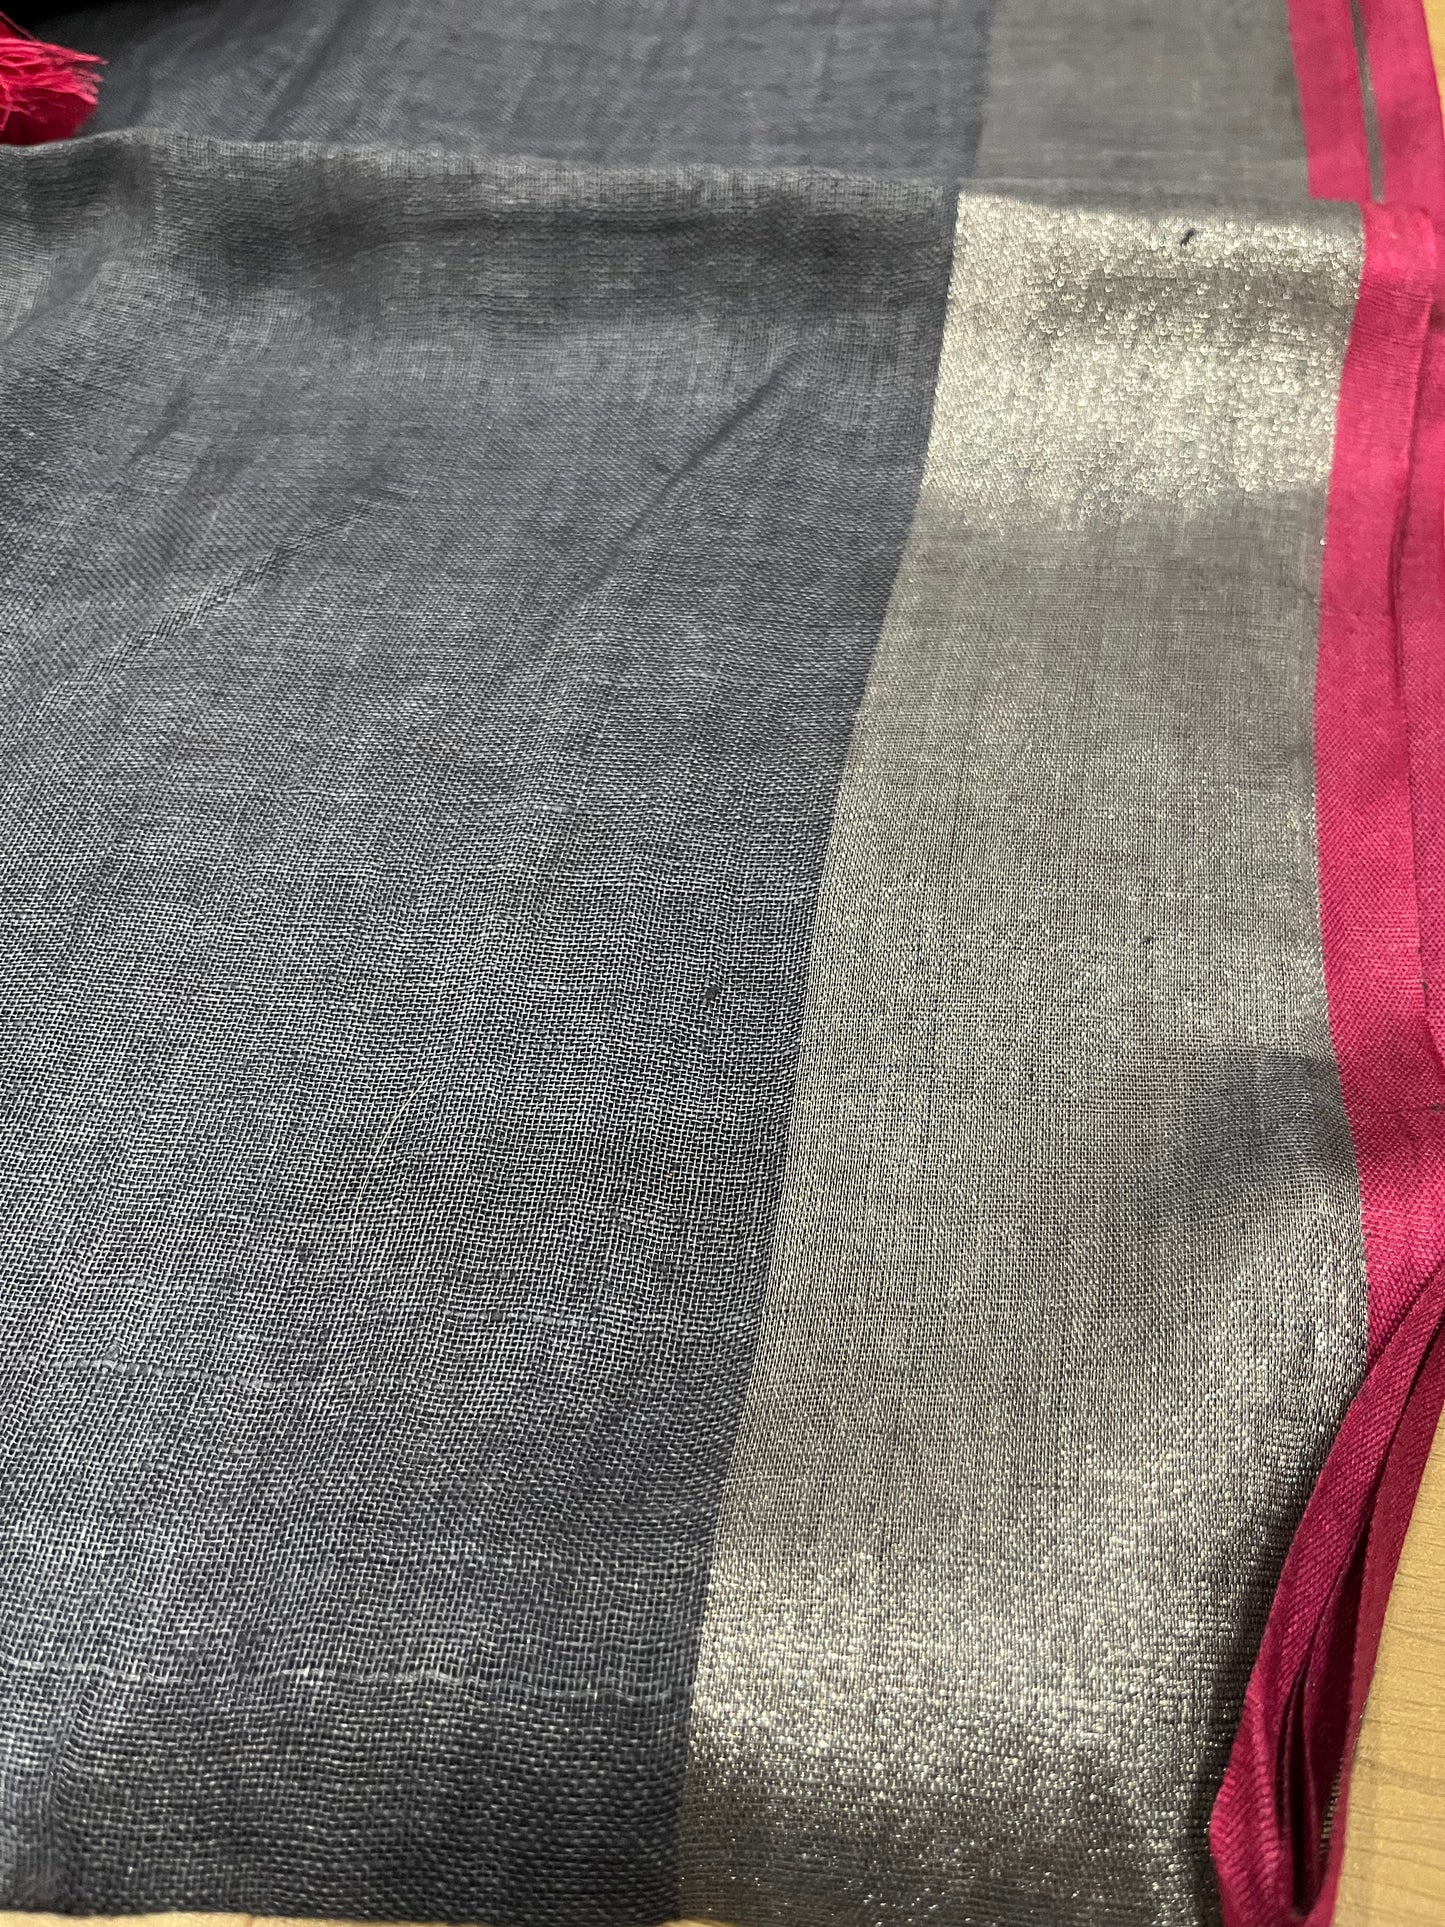 Grey shade Handwoven organic Linen Saree | Silver Zari border| Pink Kanni| Pink Contrast blouse | KIHUMS Saree